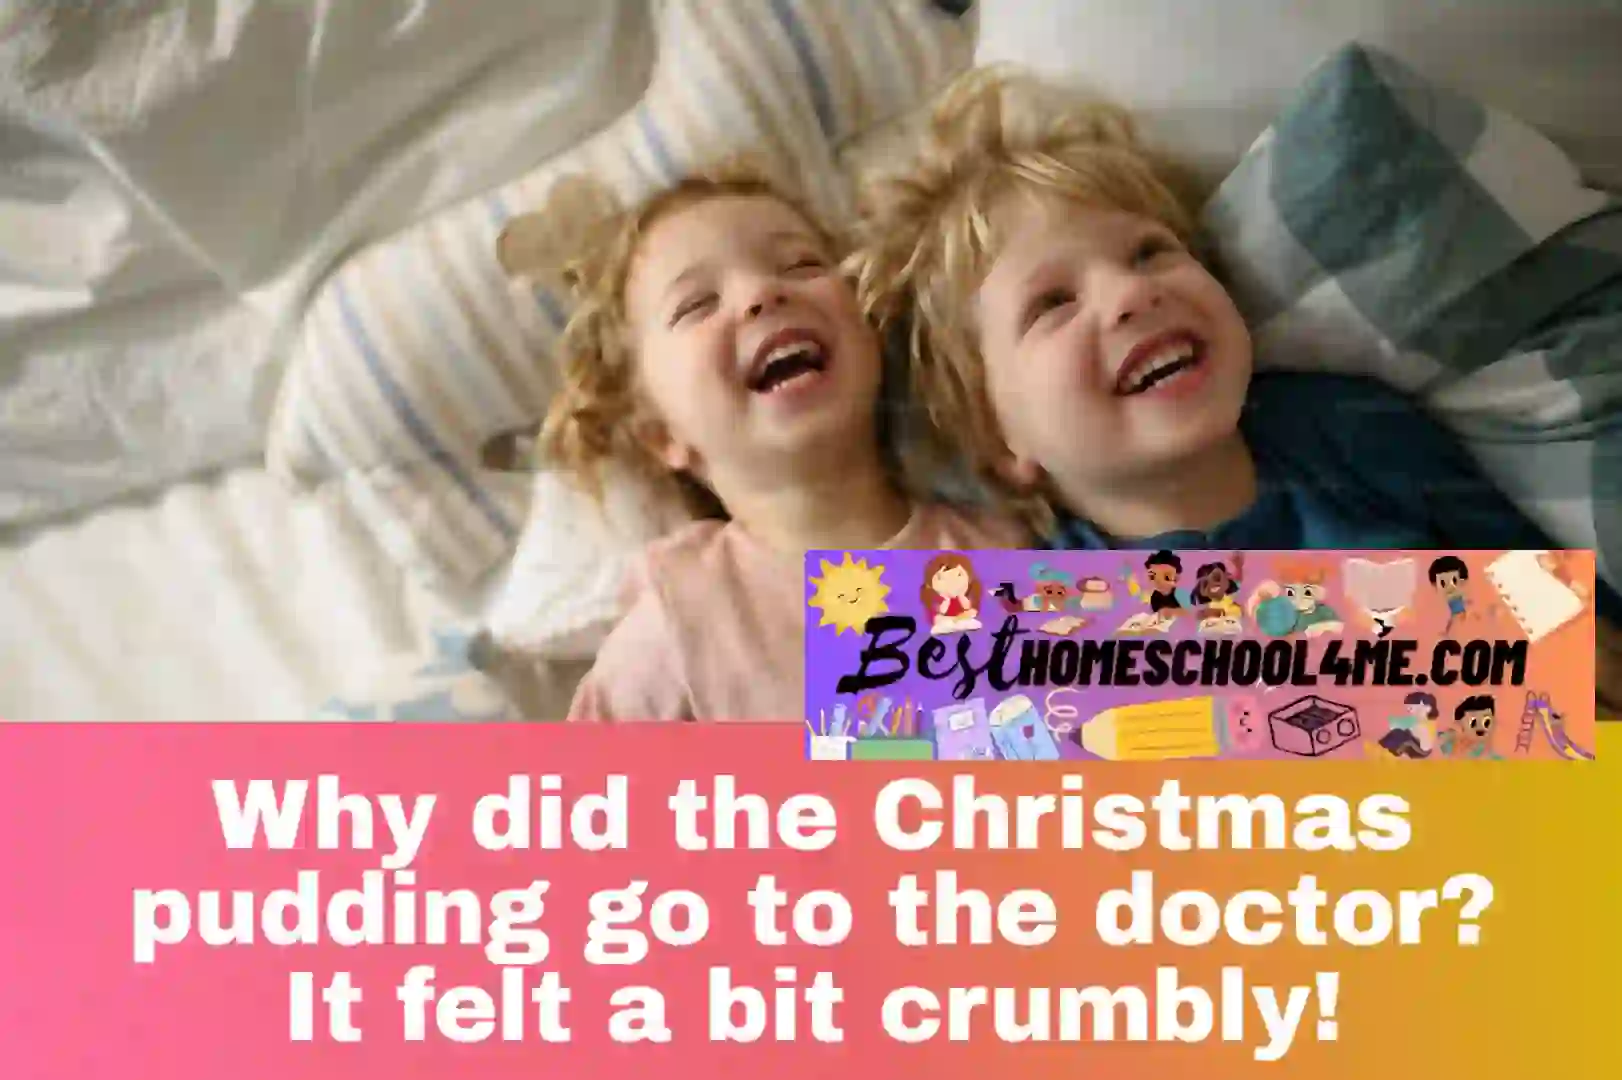 Christmas Jokes for Kids
christmas jokes for kids printable